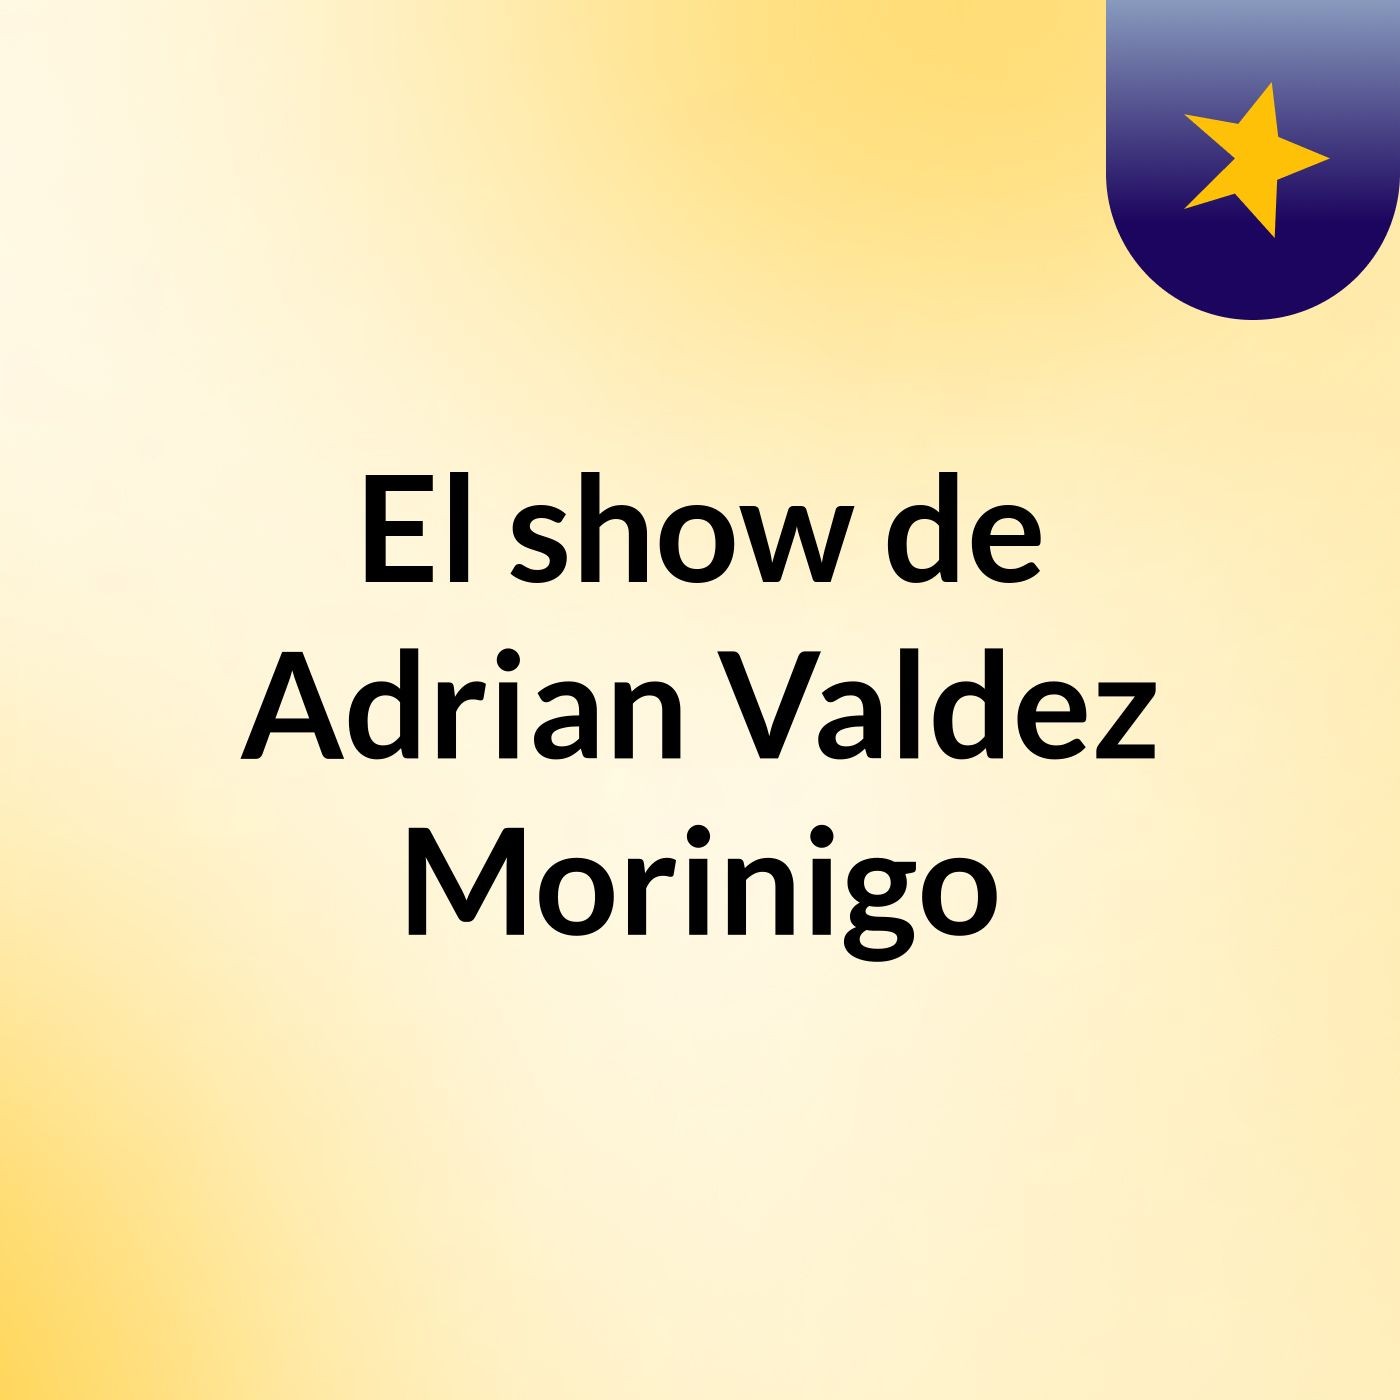 El show de Adrian Valdez Morinigo